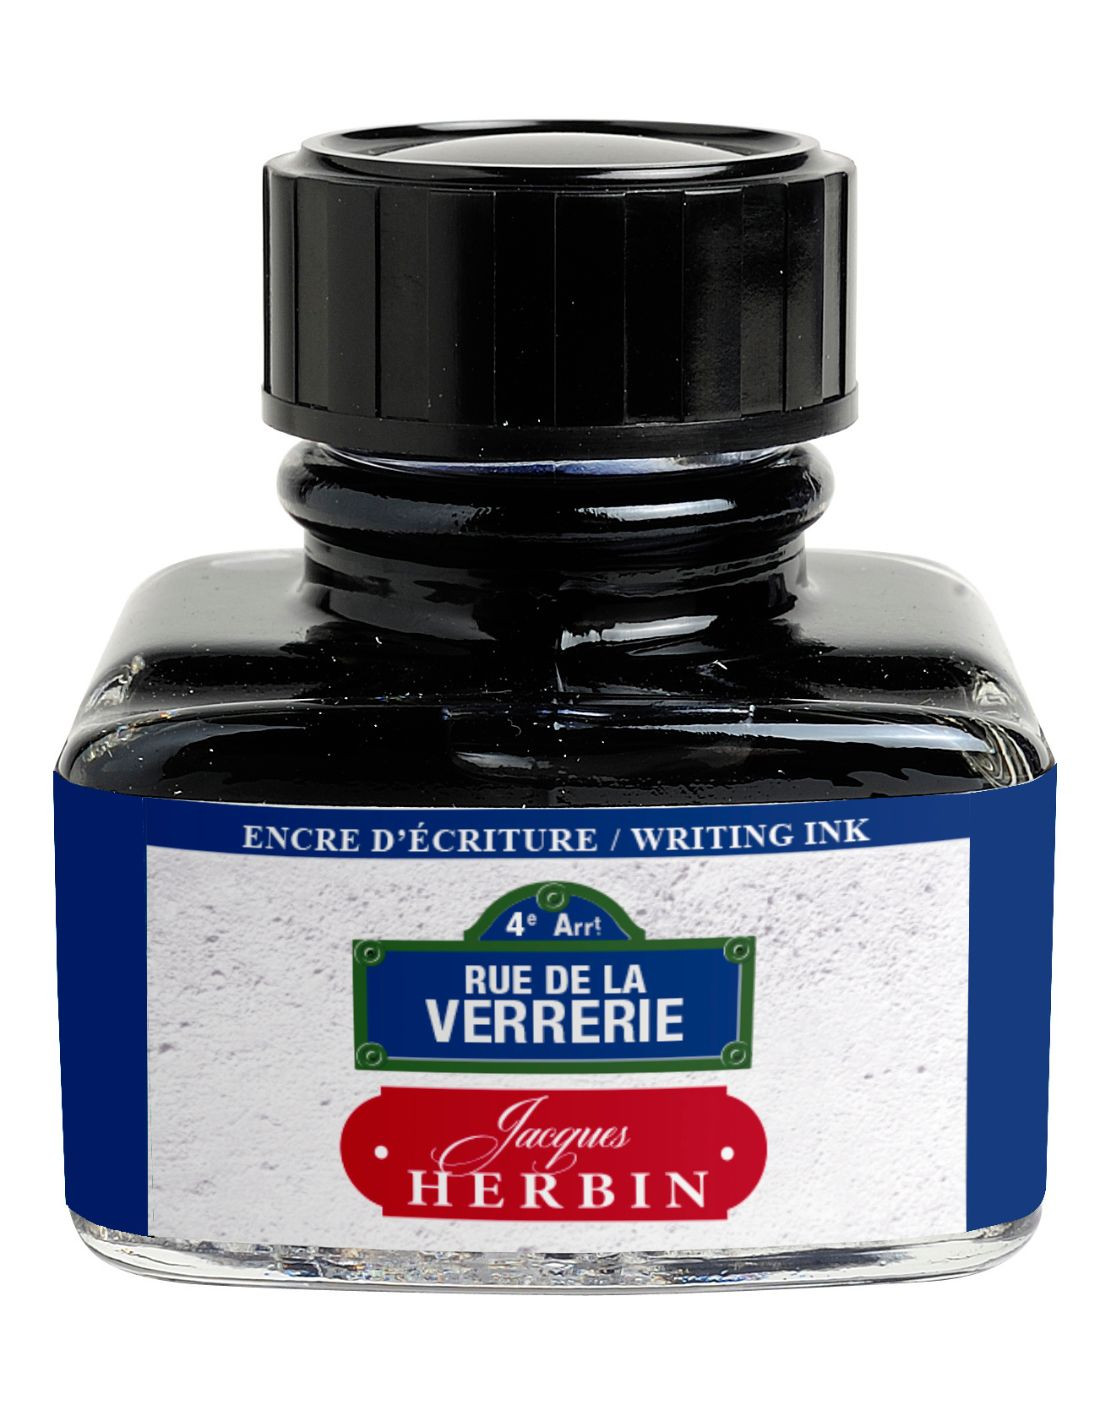 Jacques Herbin Ink - Paris Collection - Rue de la Verrerie - Bottle 30ml